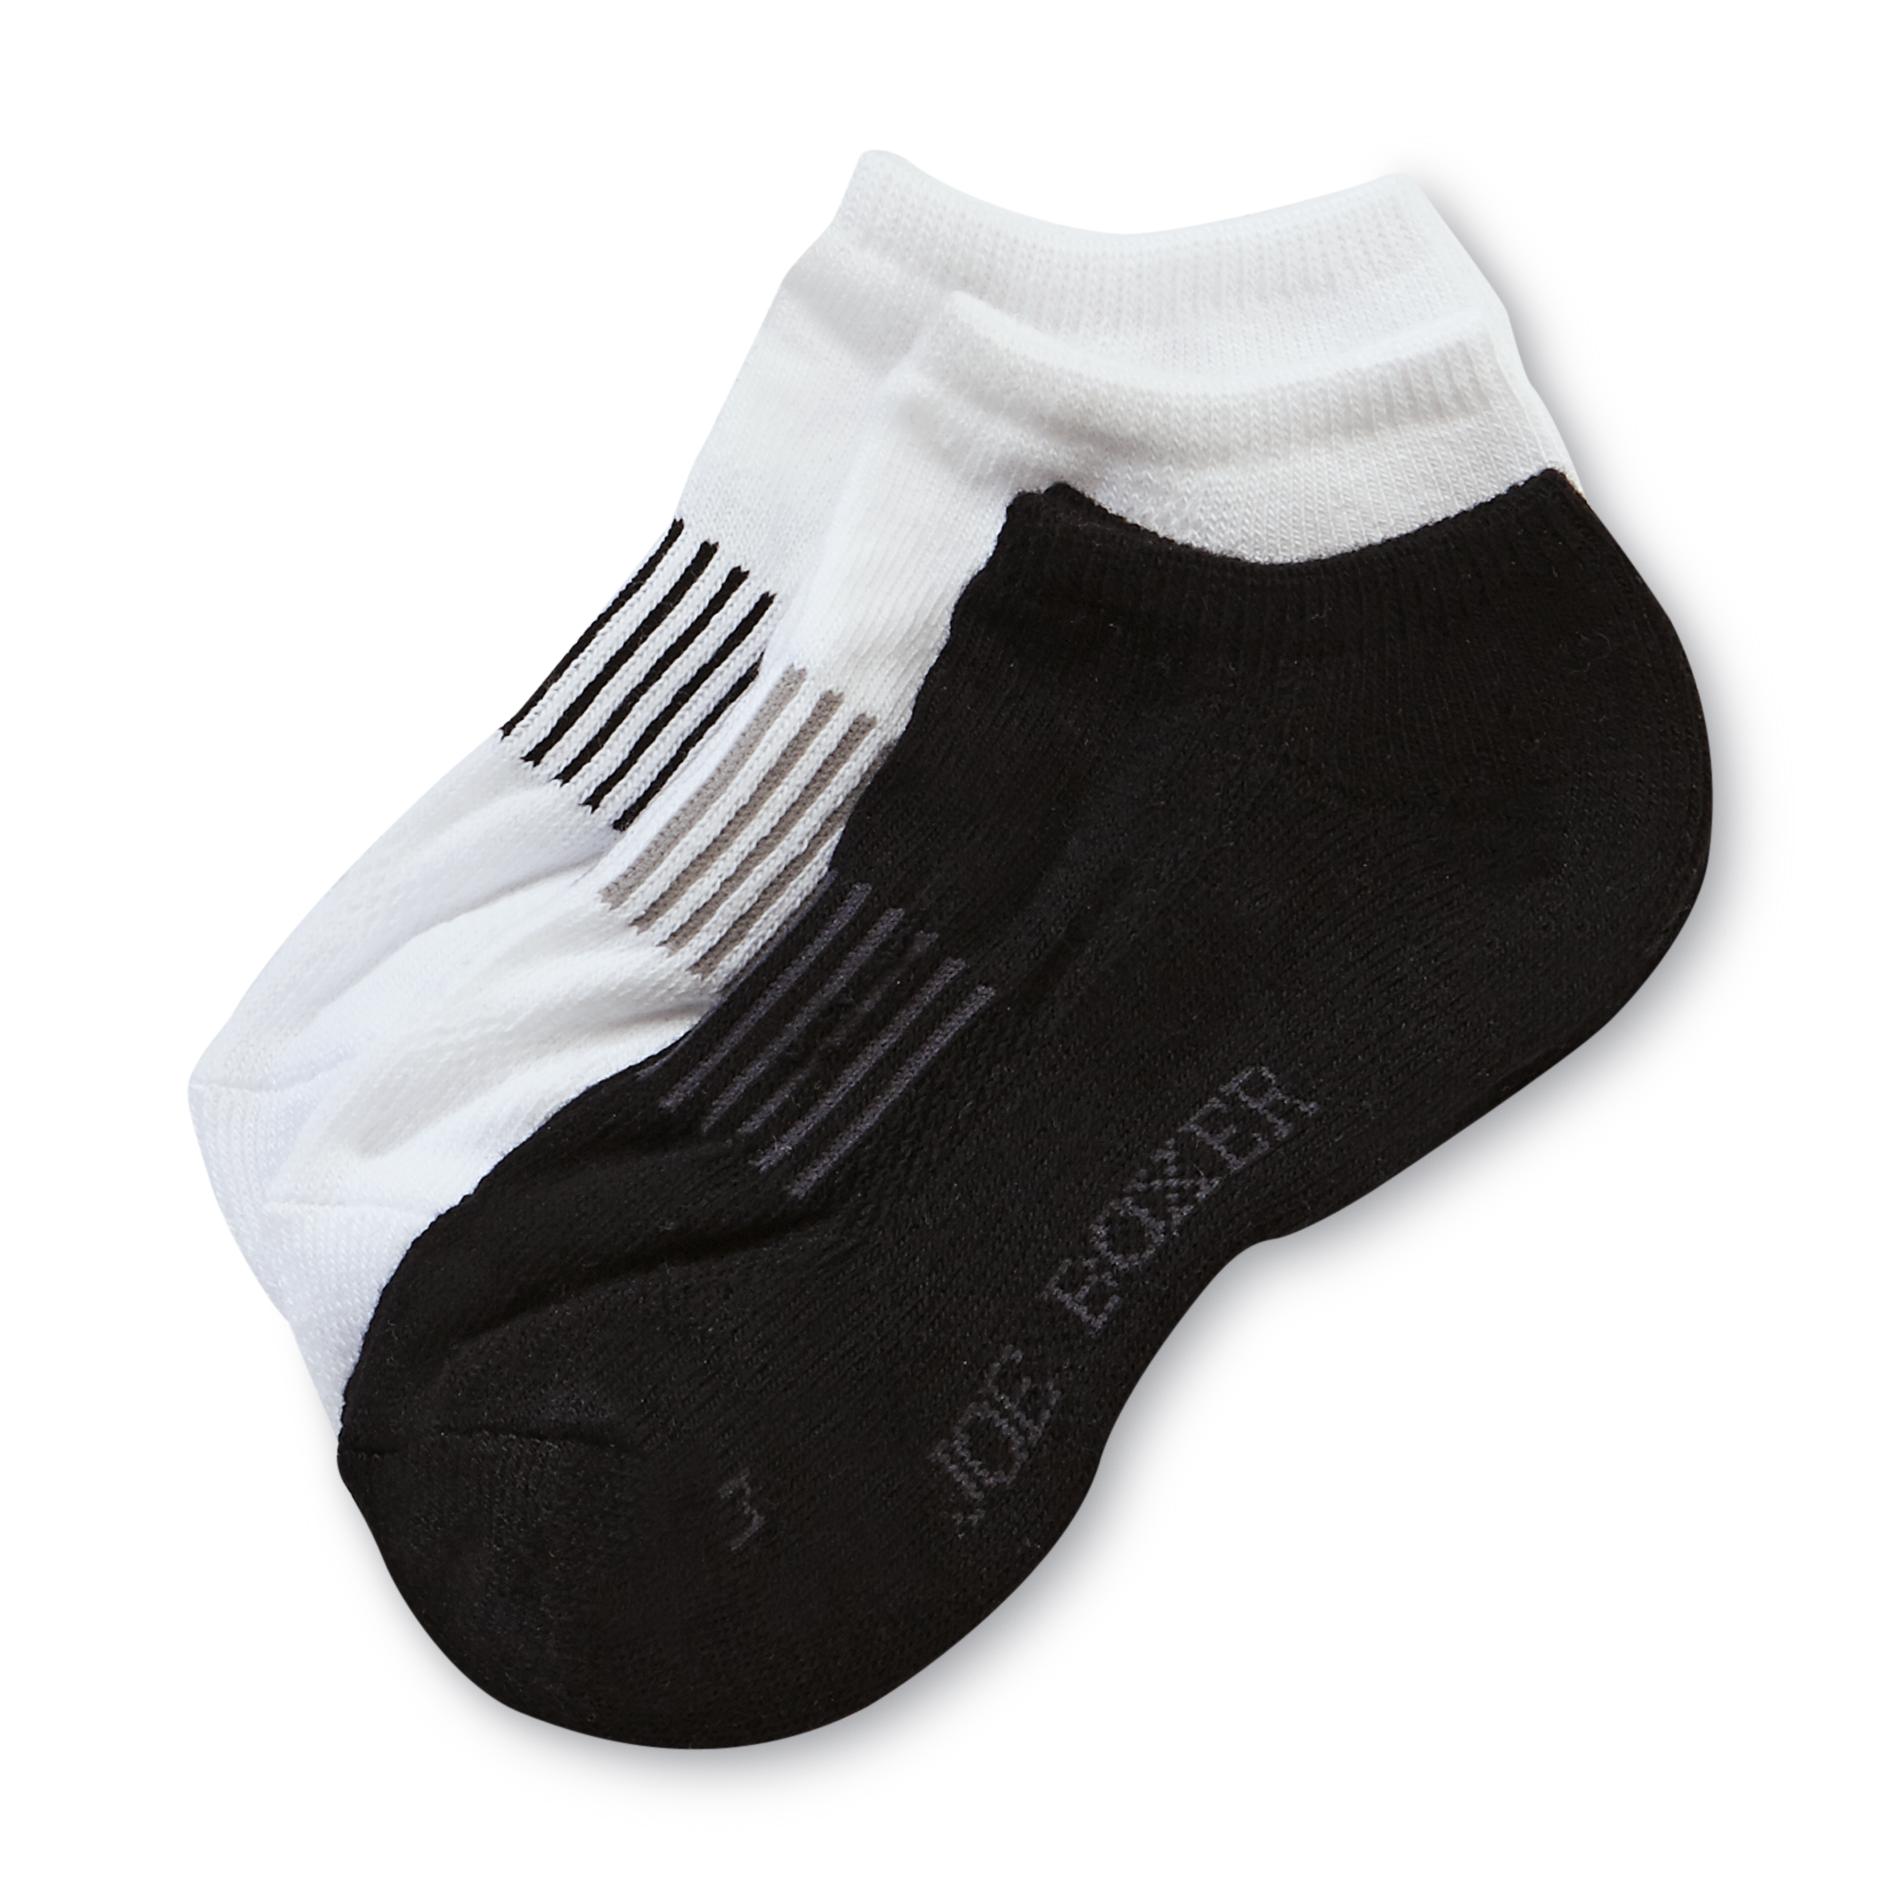 Joe Boxer Boy’s Socks 3pk Low Cut Black/White